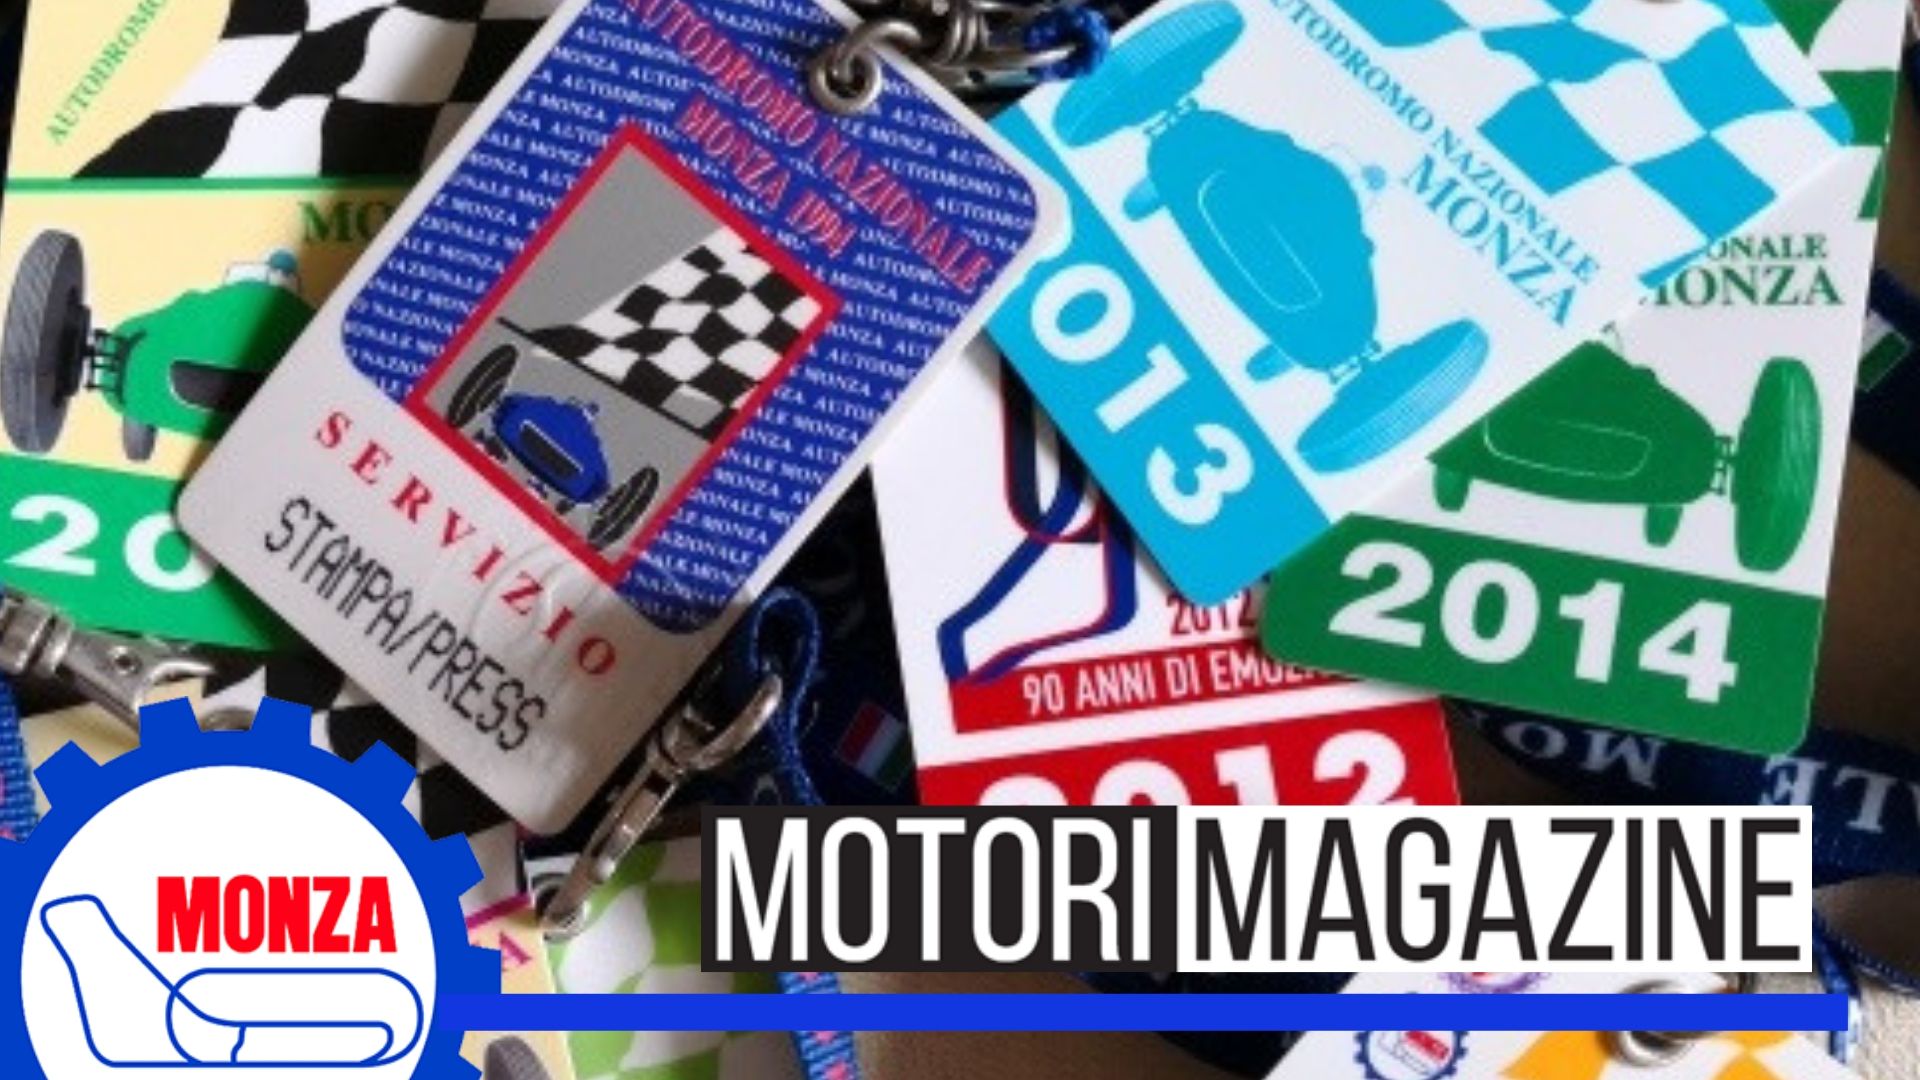 biglietti Gran Premio di Monza 2019